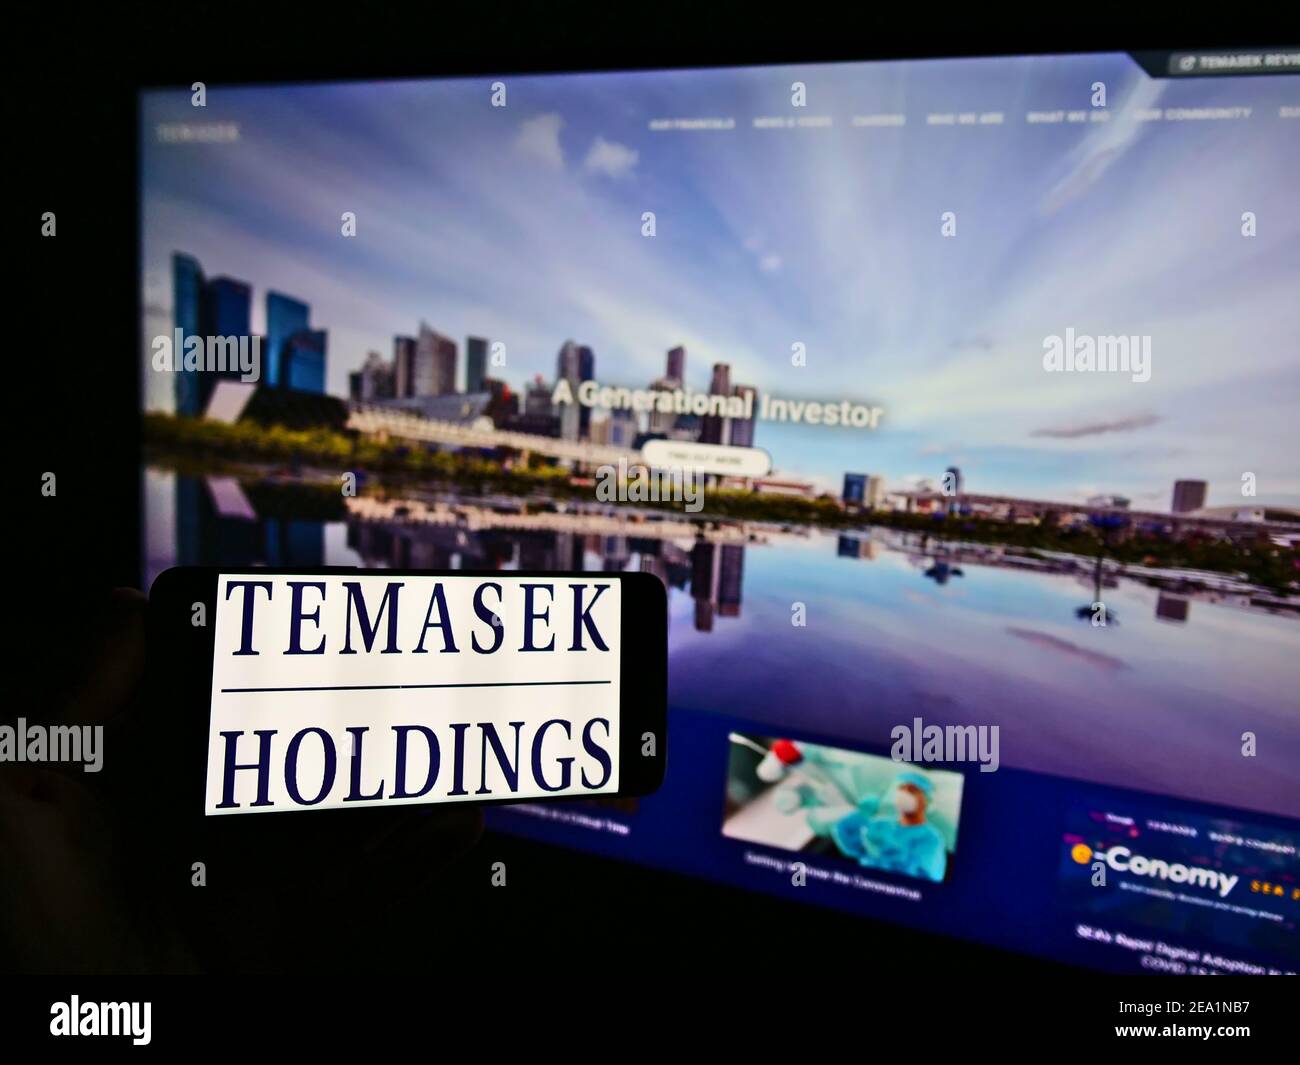 Persona che detiene smartphone con il logo della società di investimento Singaporean Temasek Holdings sullo schermo di fronte al sito web. Mettere a fuoco il display del telefono. Foto Stock